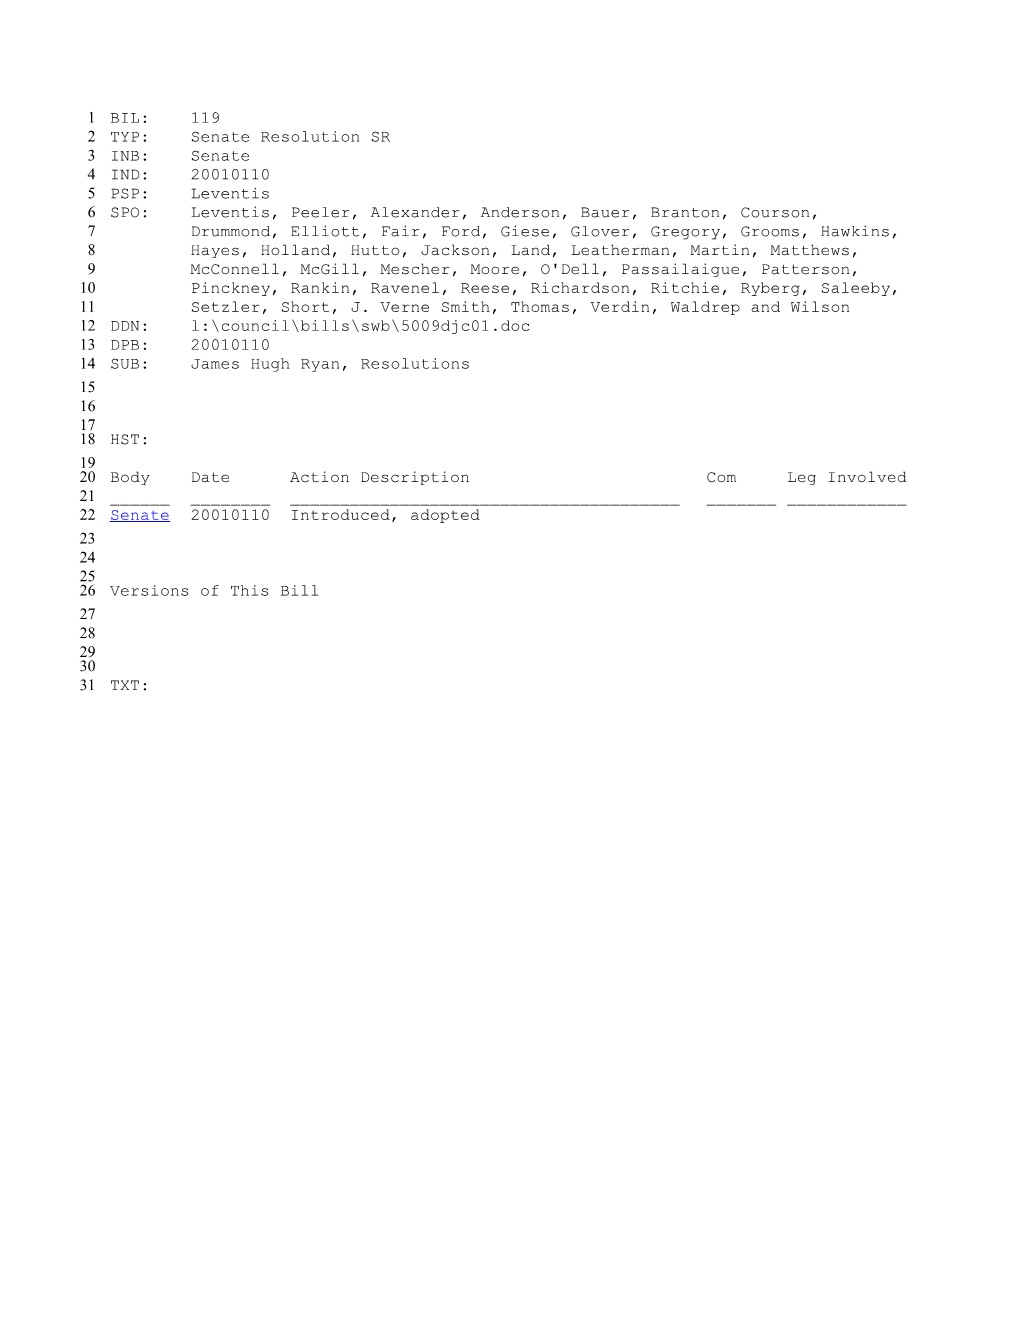 2001-2002 Bill 119: James Hugh Ryan, Resolutions - South Carolina Legislature Online